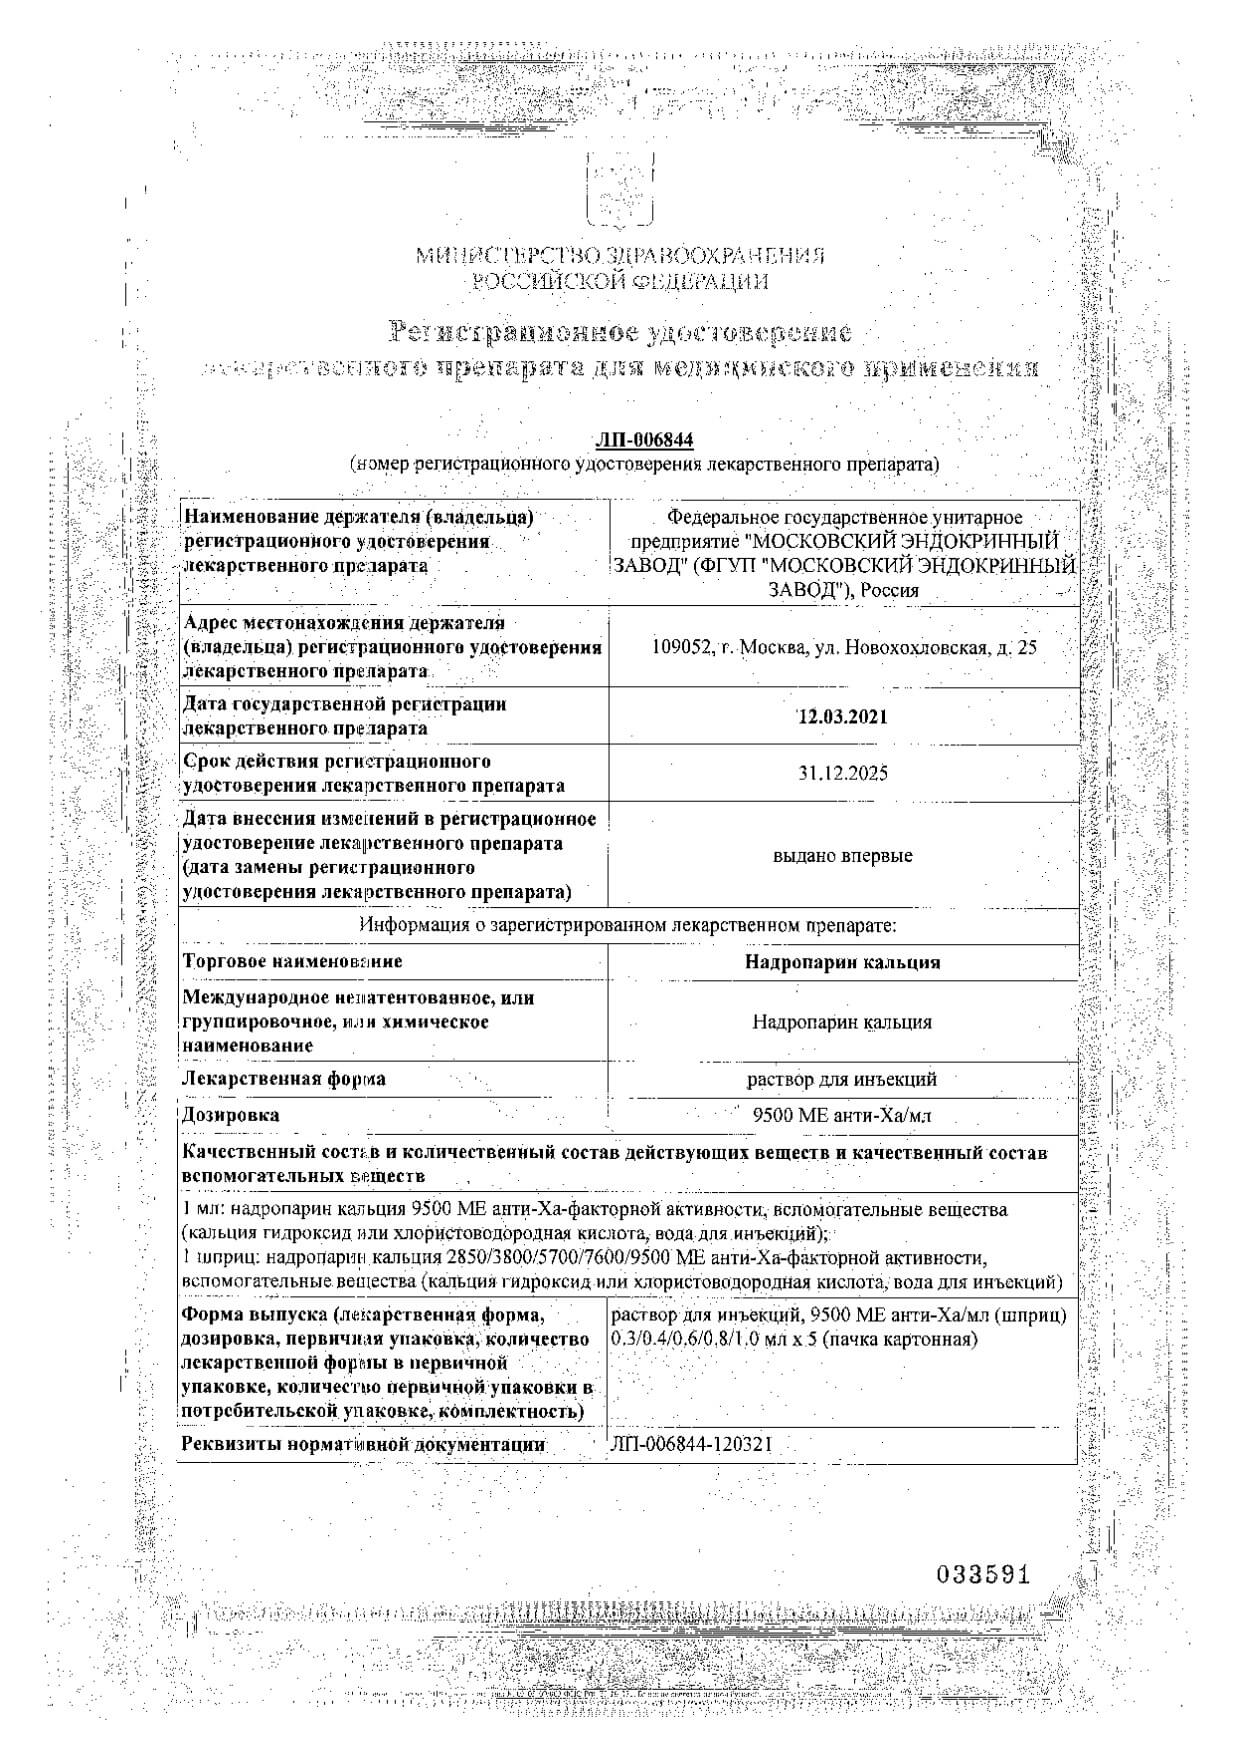 Надропарин кальция р-р д/ин. 9500МЕ анти-Ха/мл 0,3мл 5шт: сертификат